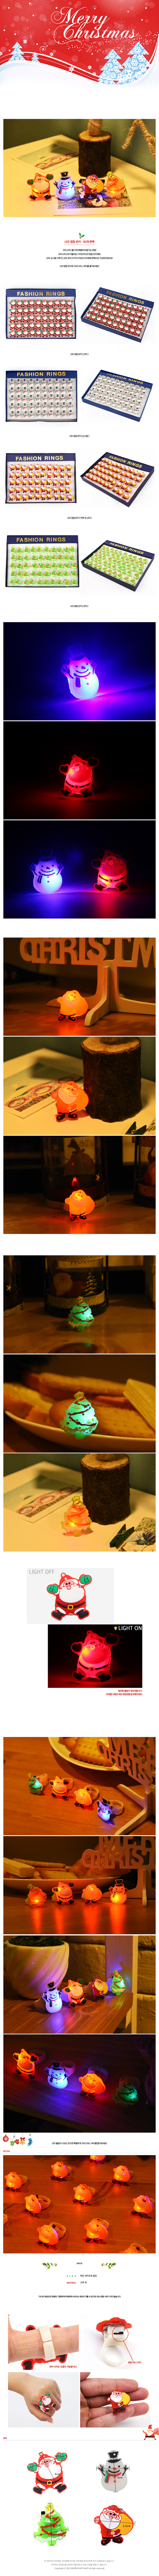 LED점등 눈사람반지(50개한팩) 50,000원 - 파티해 키덜트/취미, 파티용품/의상, 파티용품, LED용품/전구 바보사랑 LED점등 눈사람반지(50개한팩) 50,000원 - 파티해 키덜트/취미, 파티용품/의상, 파티용품, LED용품/전구 바보사랑